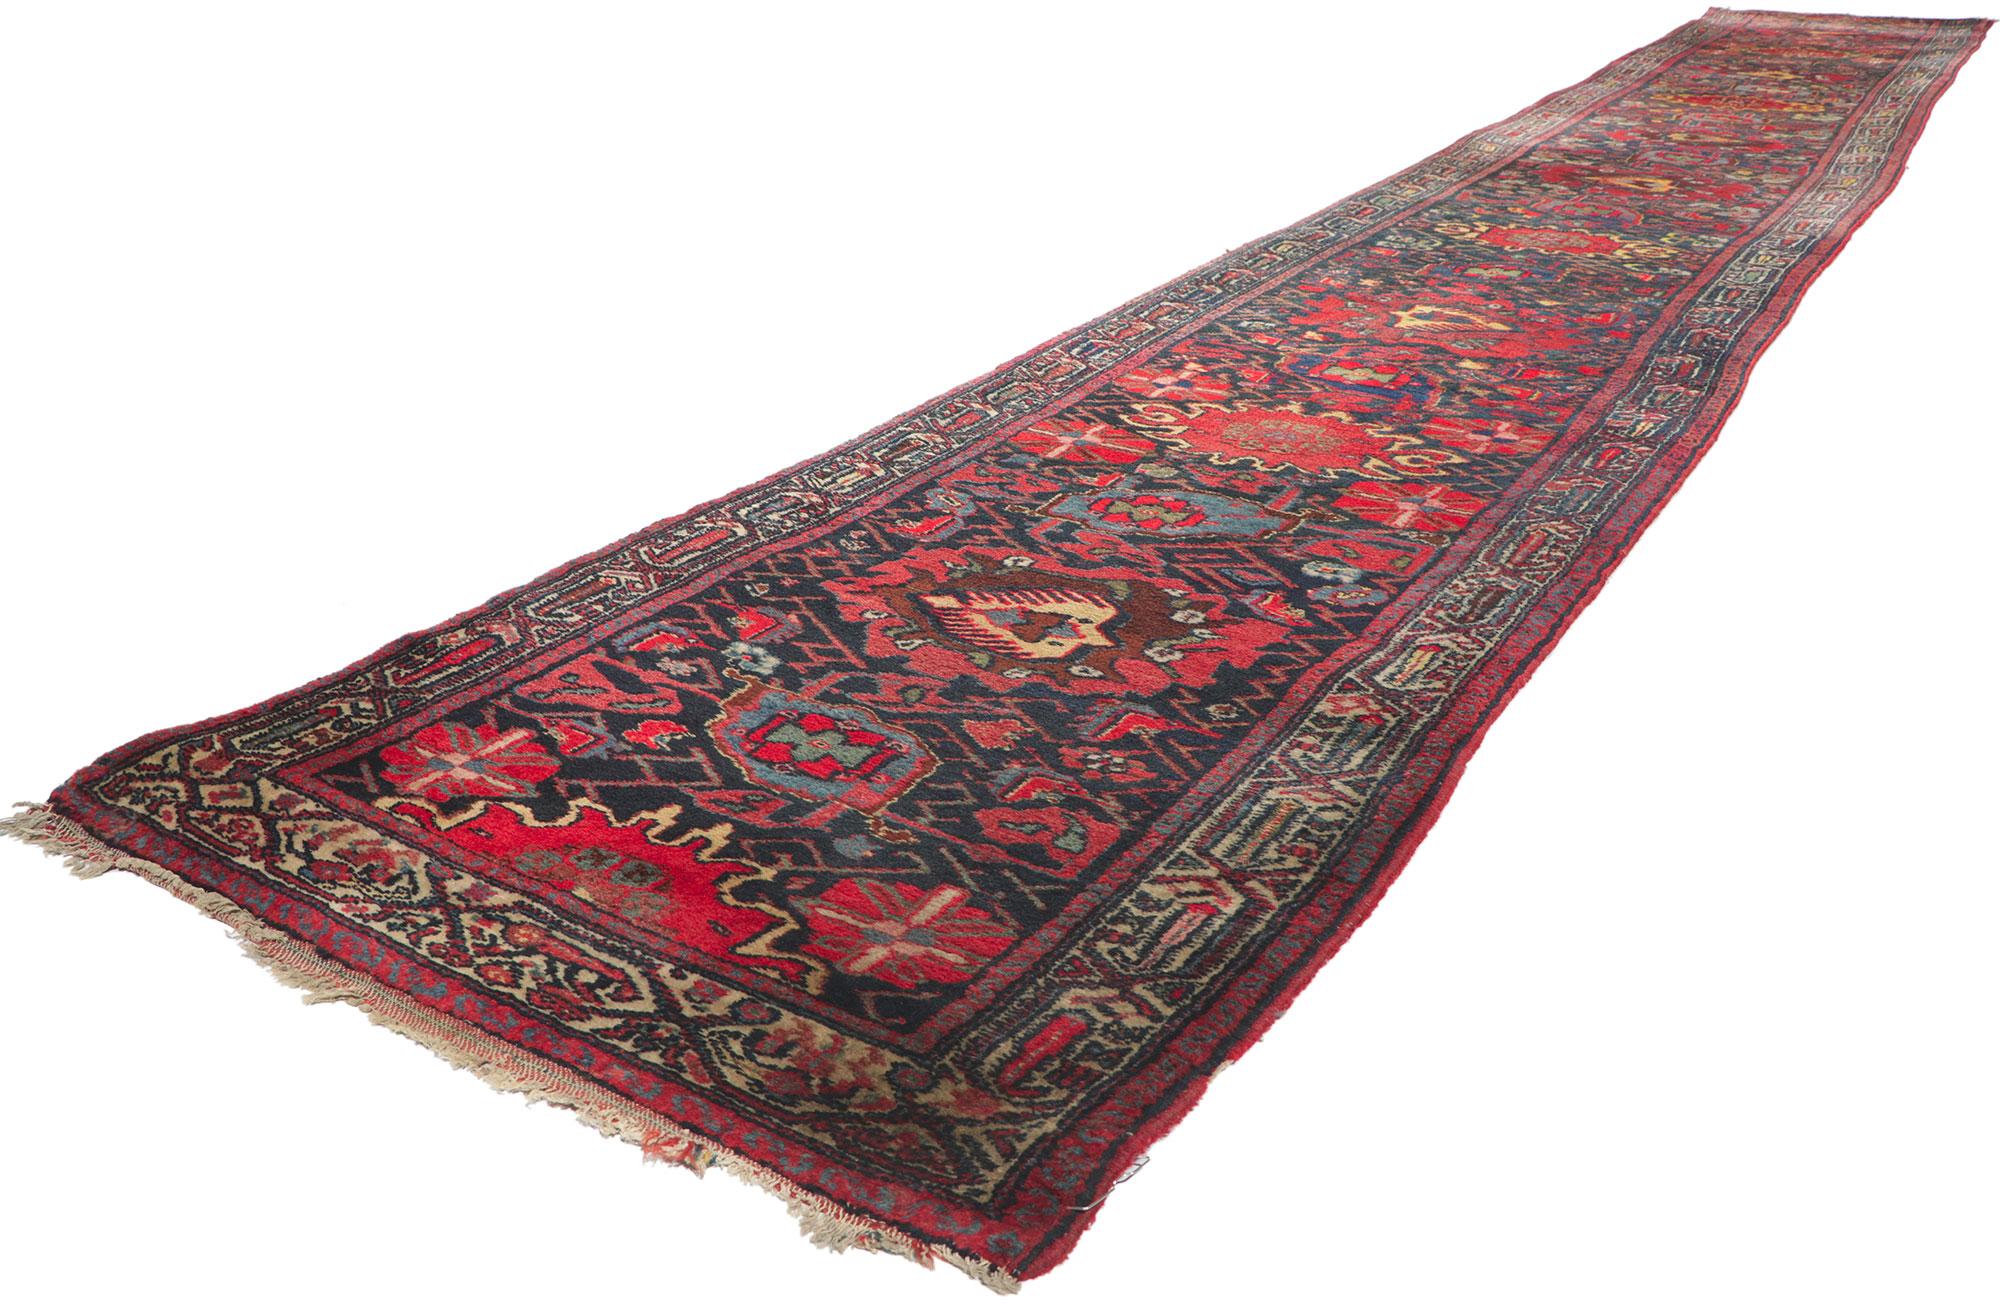 78523 Tapis persan antique Bibikabad Runner, 02'07 x 20'02.
Plein de détails minuscules et de charme nomade, ce chemin de table persan en laine nouée à la main est une vision captivante de la beauté tissée. Le design tribal et les couleurs vives de